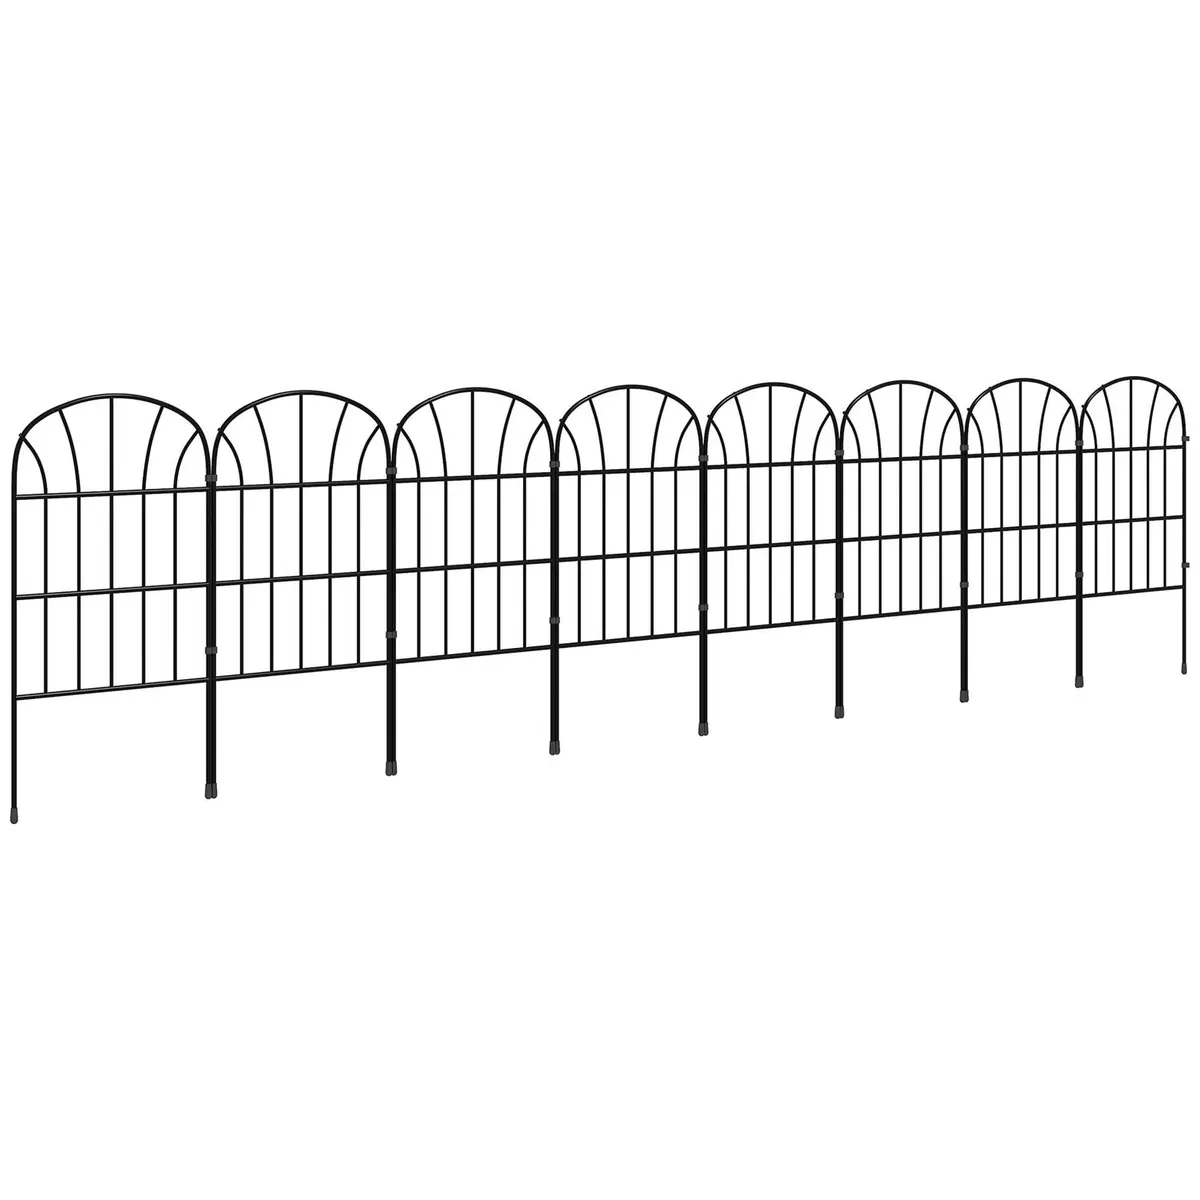 OUTSUNNY Lot de 8 clôtures de jardin décoratives avec ornements métal noir